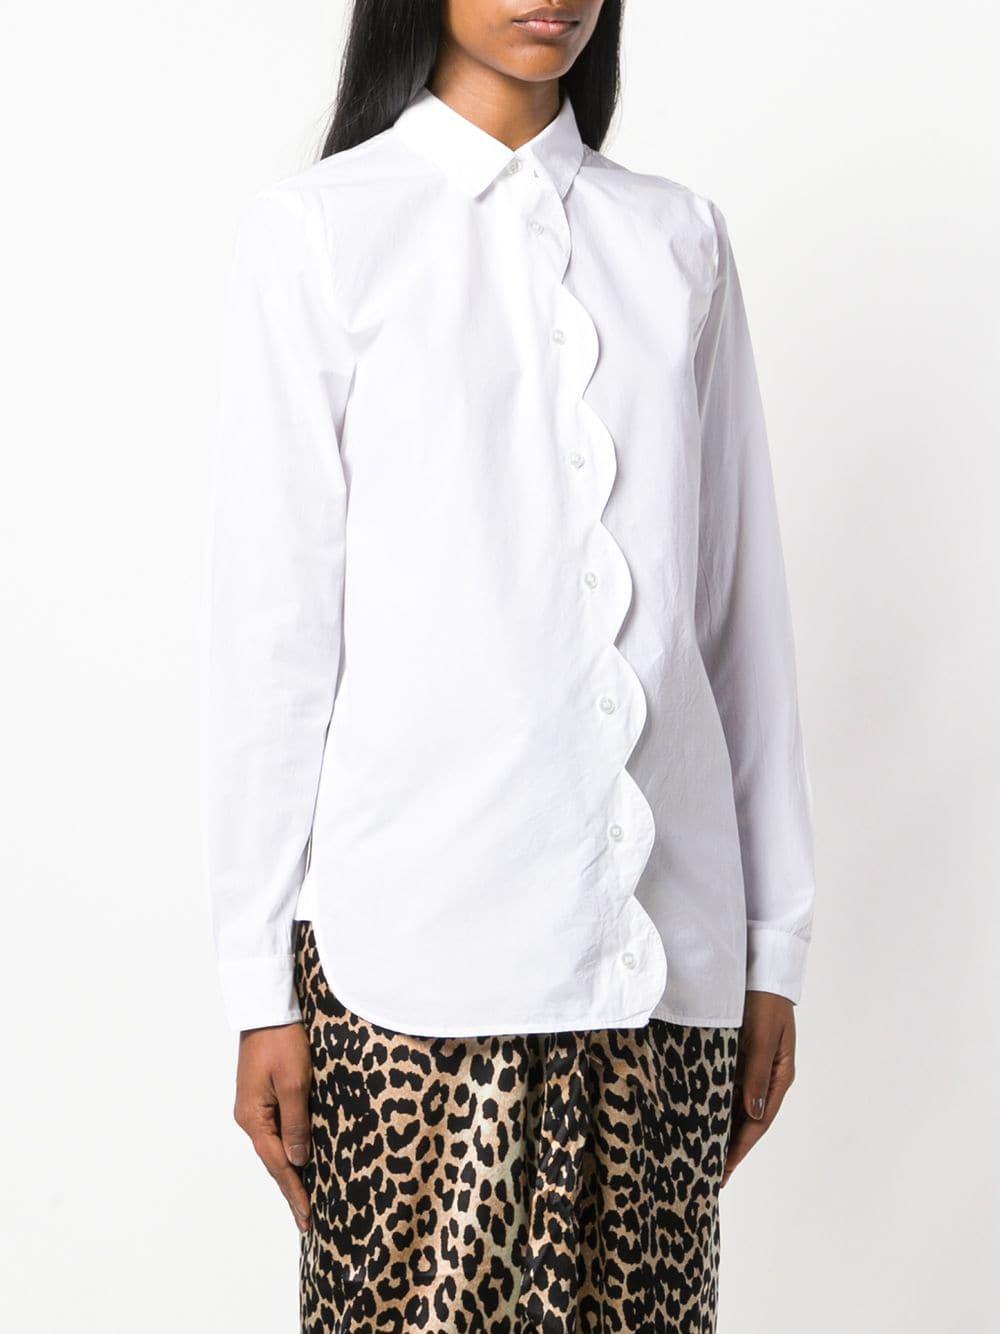 Ganni Scallop Trim Shirt in White | Lyst